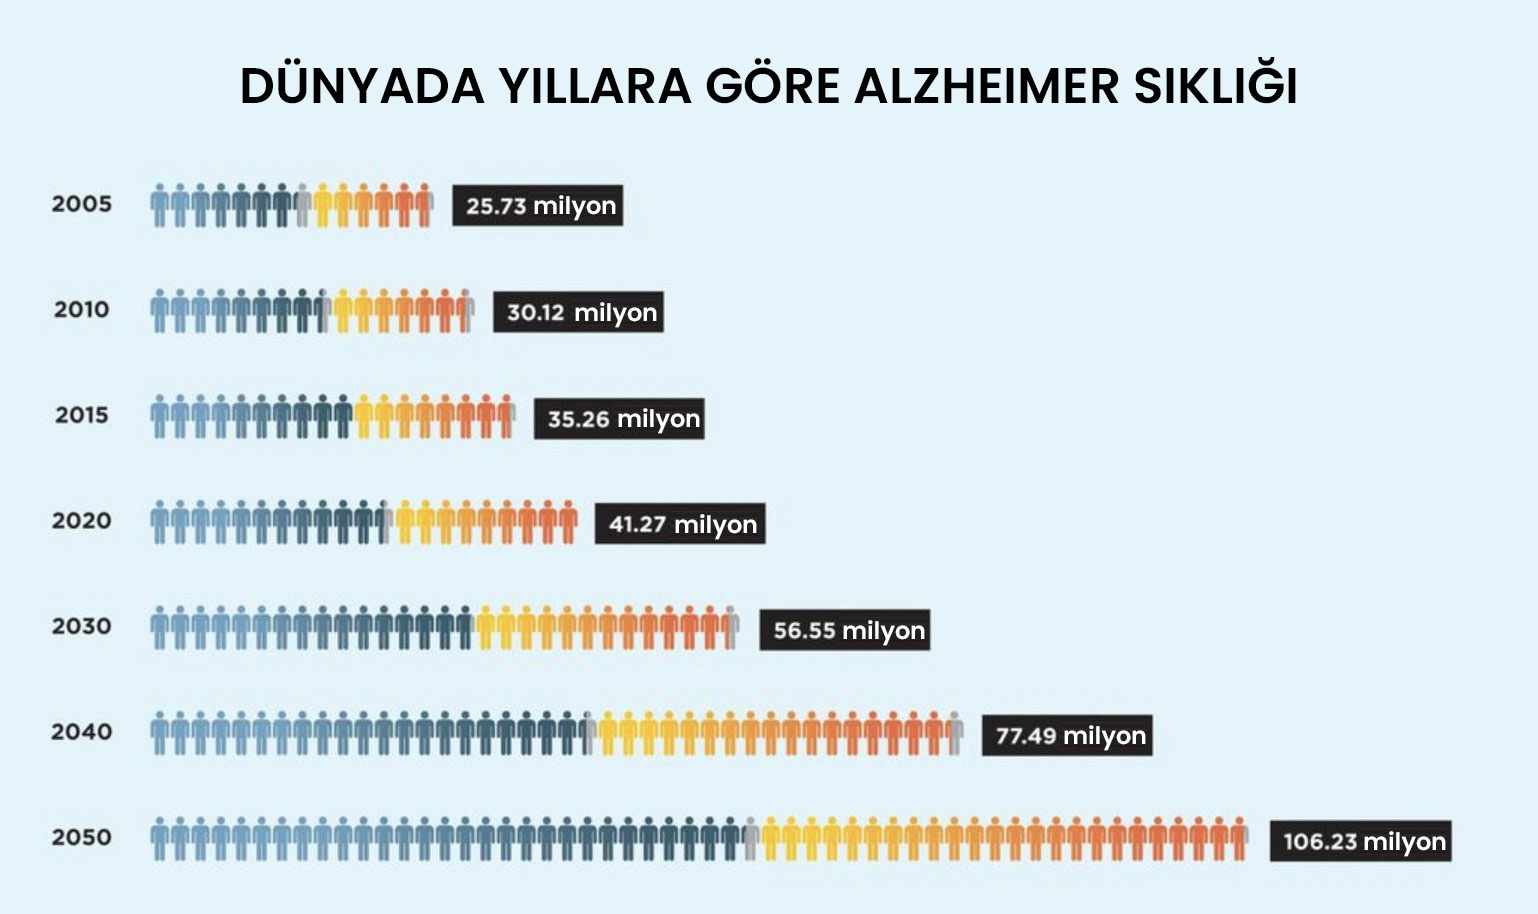 Dünyada yıllara göre Alzheimer sıklığı